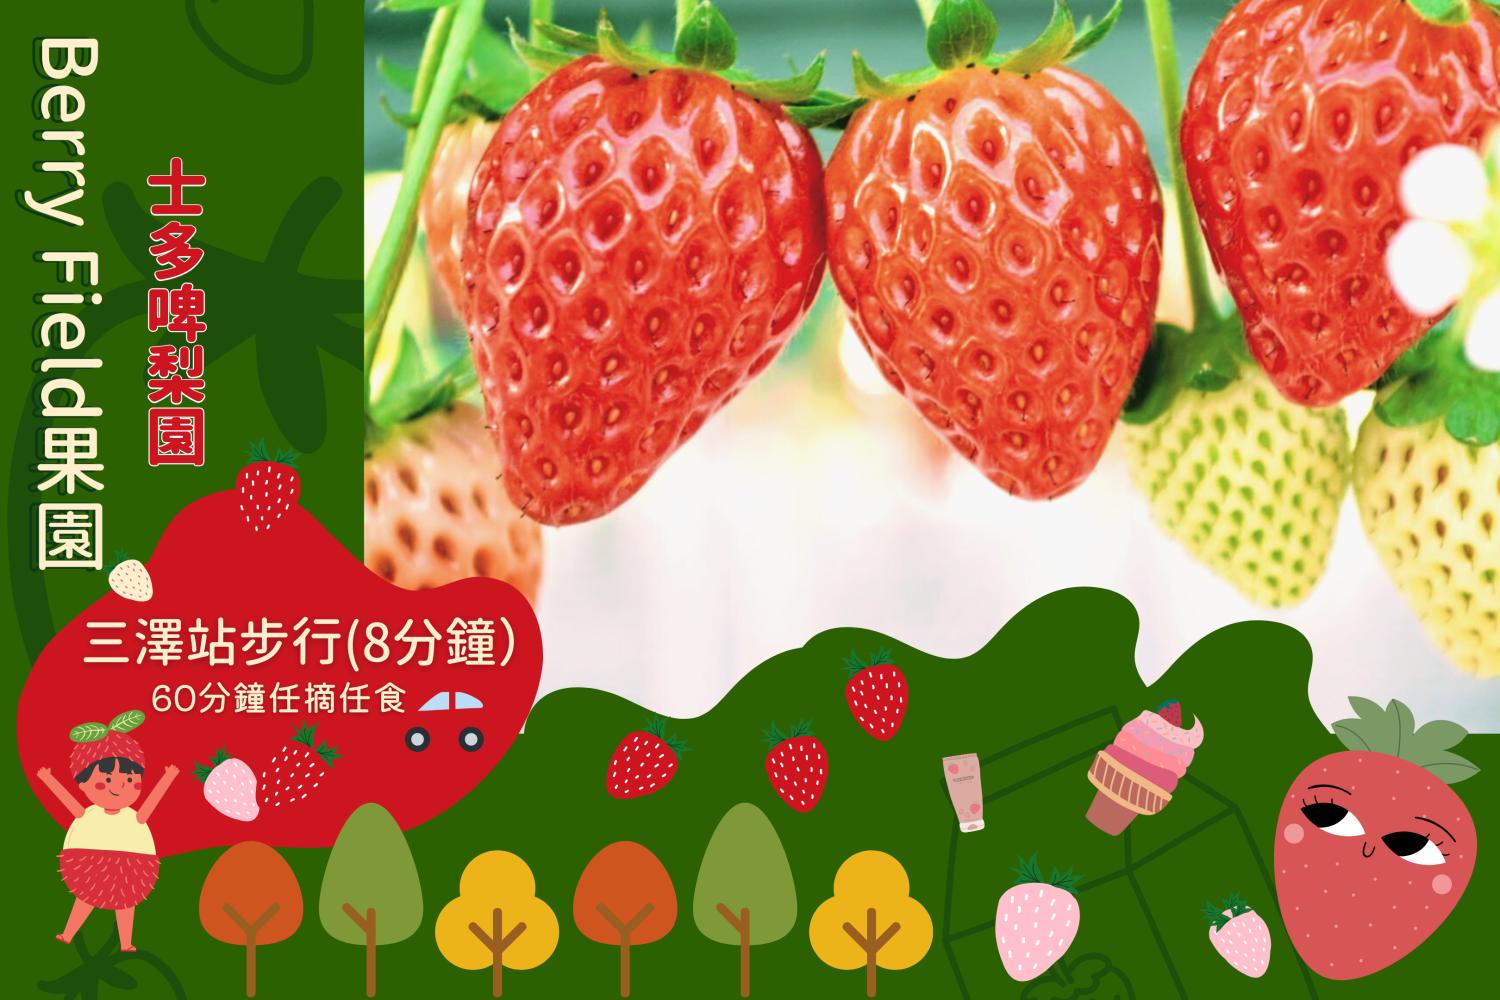 【田園草莓之味】福岡Berry Field草莓60分鐘任食體驗